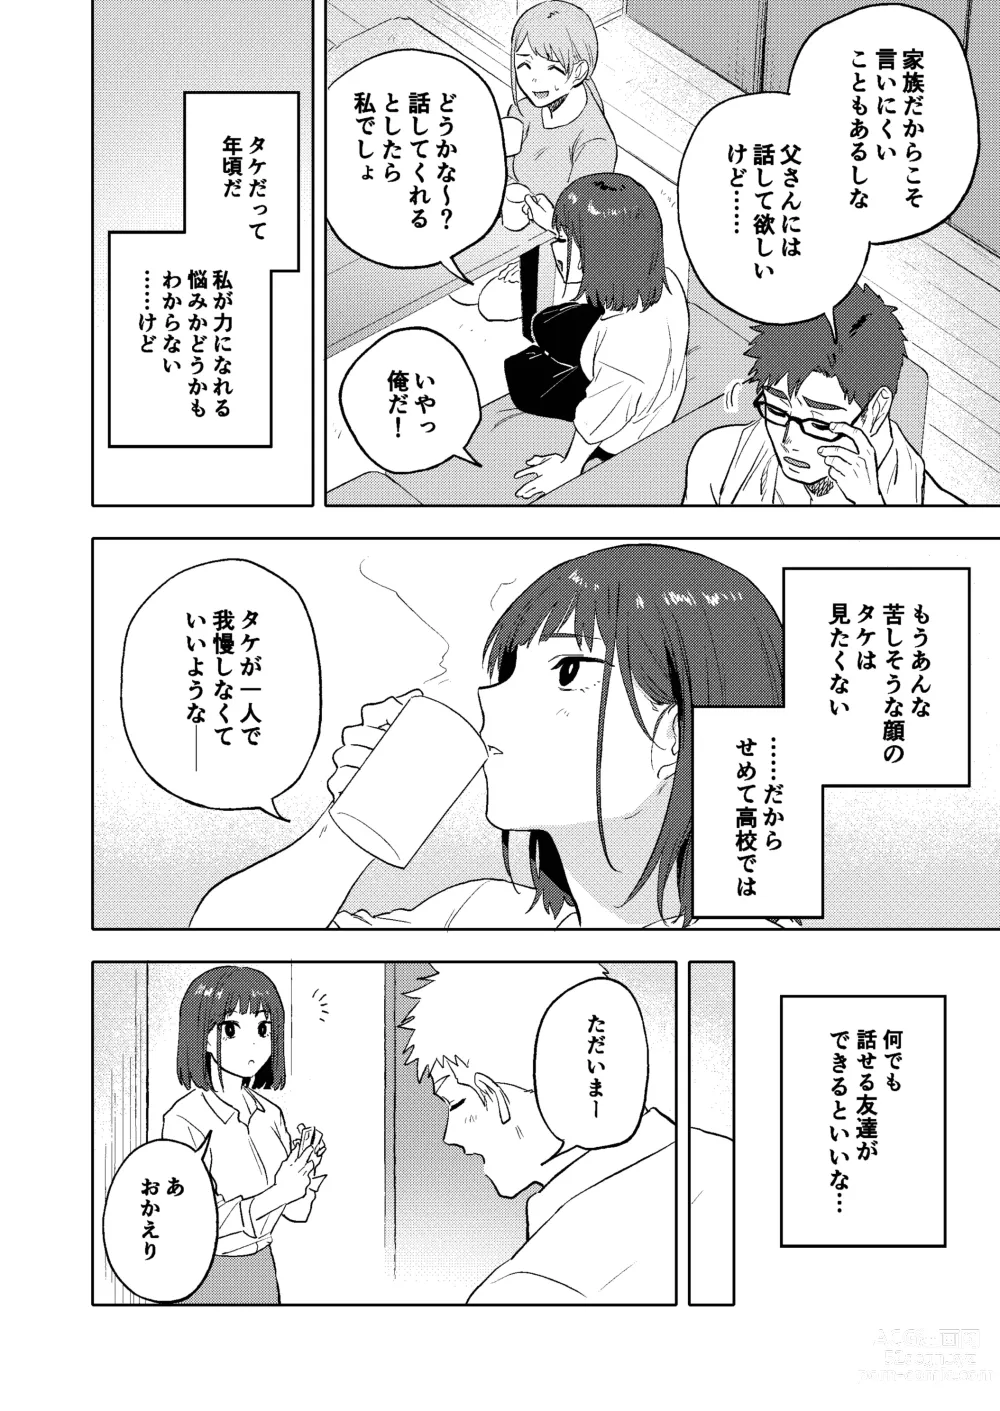 Page 49 of doujinshi Dainarishounari 2